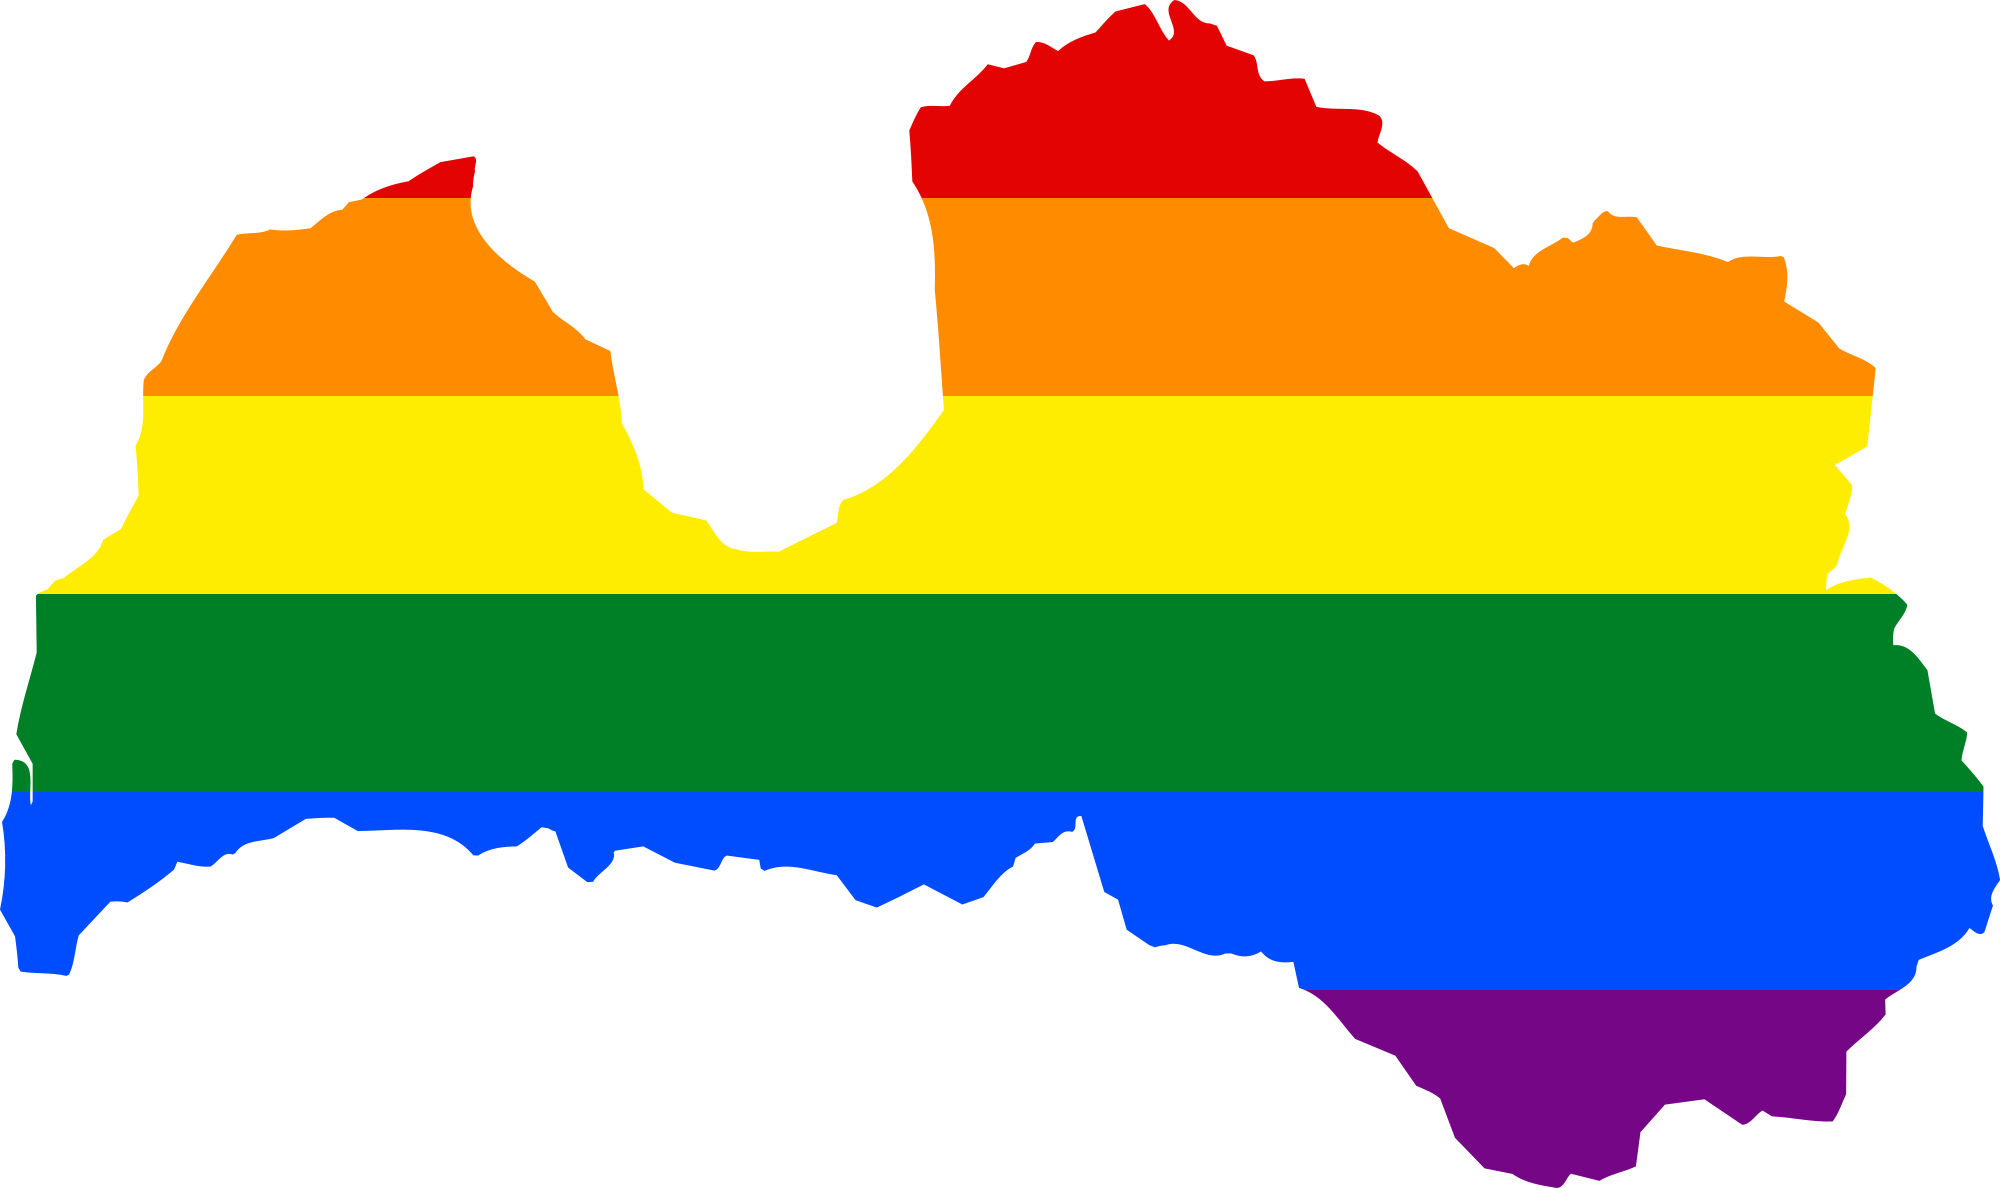 A Rainbow Flag On A Black Background